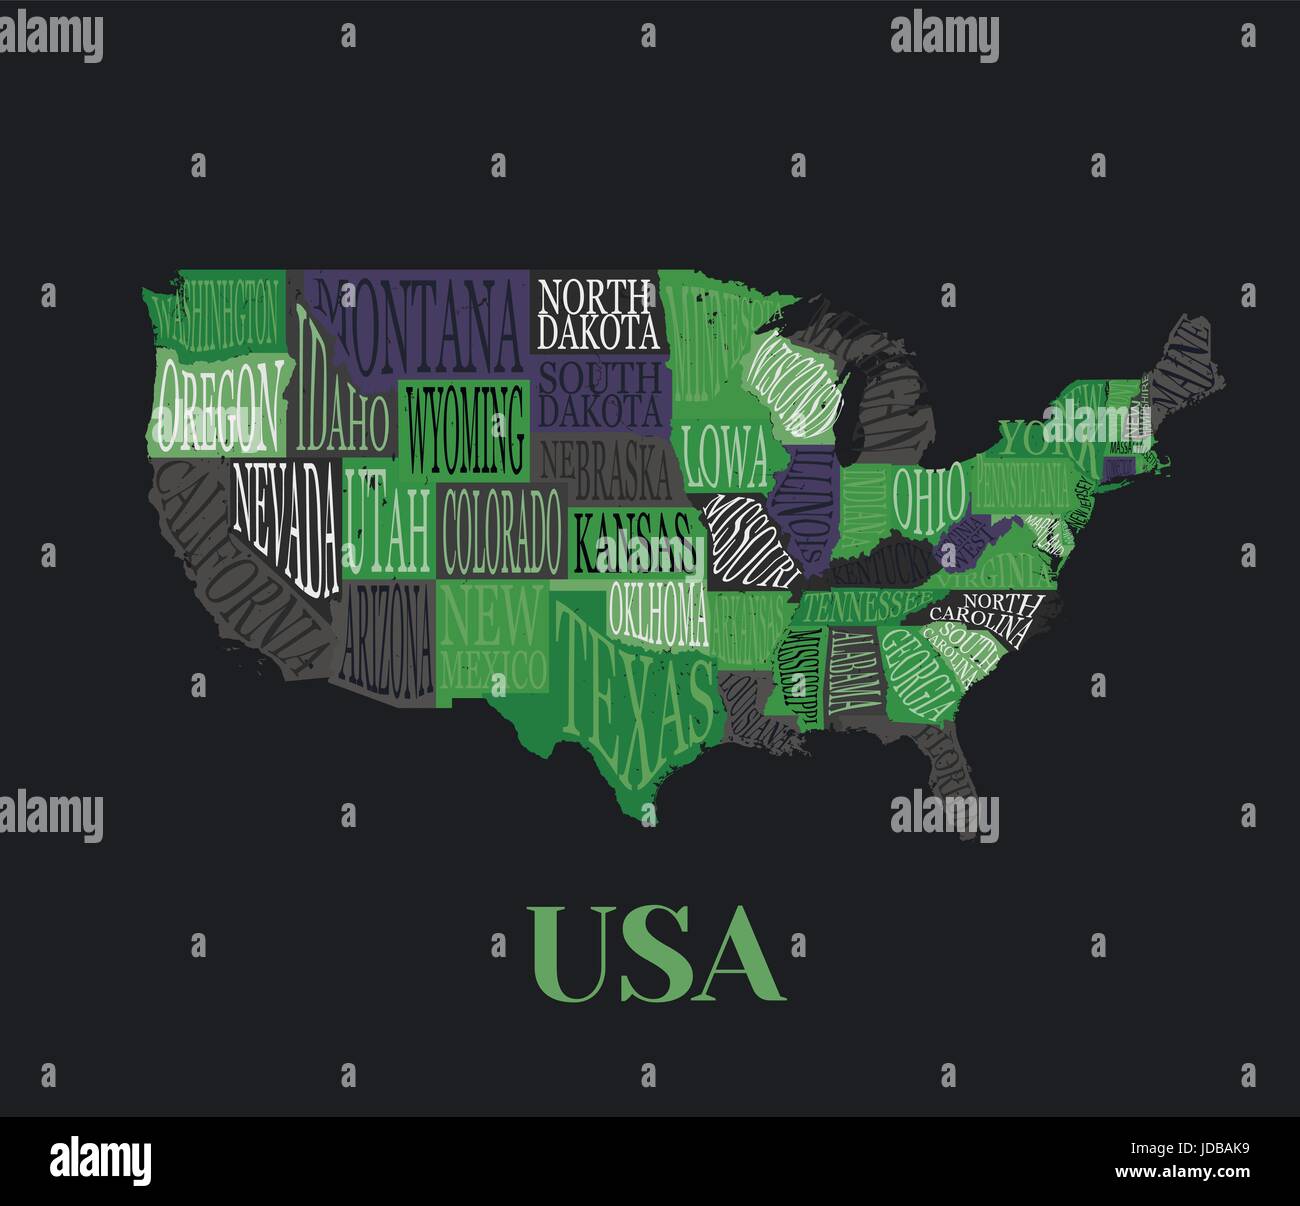 USA-Karte mit Staaten-bildlichen geographischen dekorative Poster von Amerika handgezeichnete Design für print-Wanddekoration Schriftzug. Einzigartige kreative typogr Stock Vektor